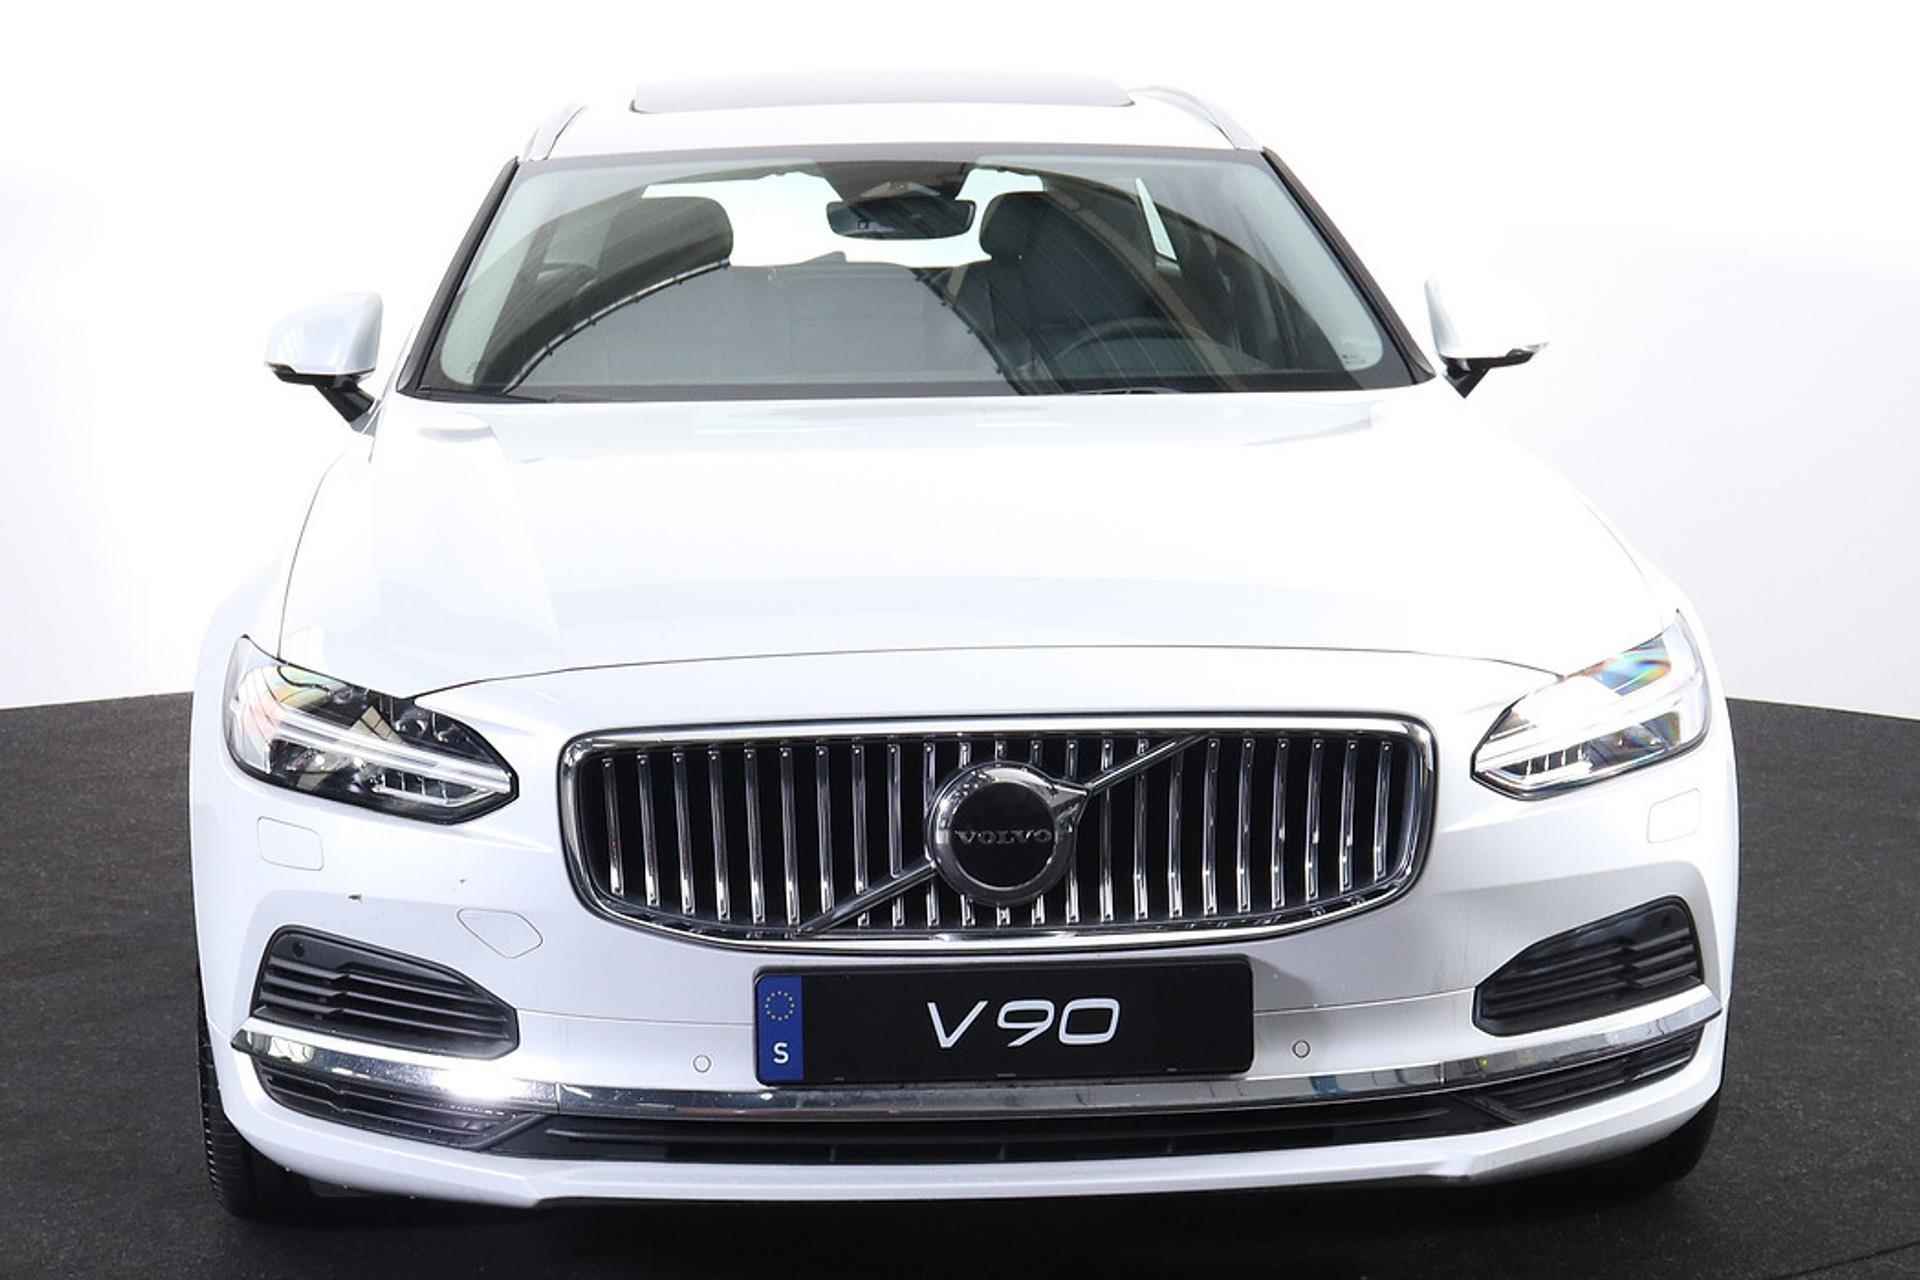 Volvo V90 T6 AWD Recharge Inscription - Panorama/schuifdak - IntelliSafe Assist & Surround - Harman/Kardon audio - Adaptieve LED koplampen - Parkeercamera achter - Verwarmde voorstoelen & stuur - Parkeersensoren voor & achter - Elektr. bedienb. voorstoelen met geheugen - Standkachel - 19' LMV - 2/33